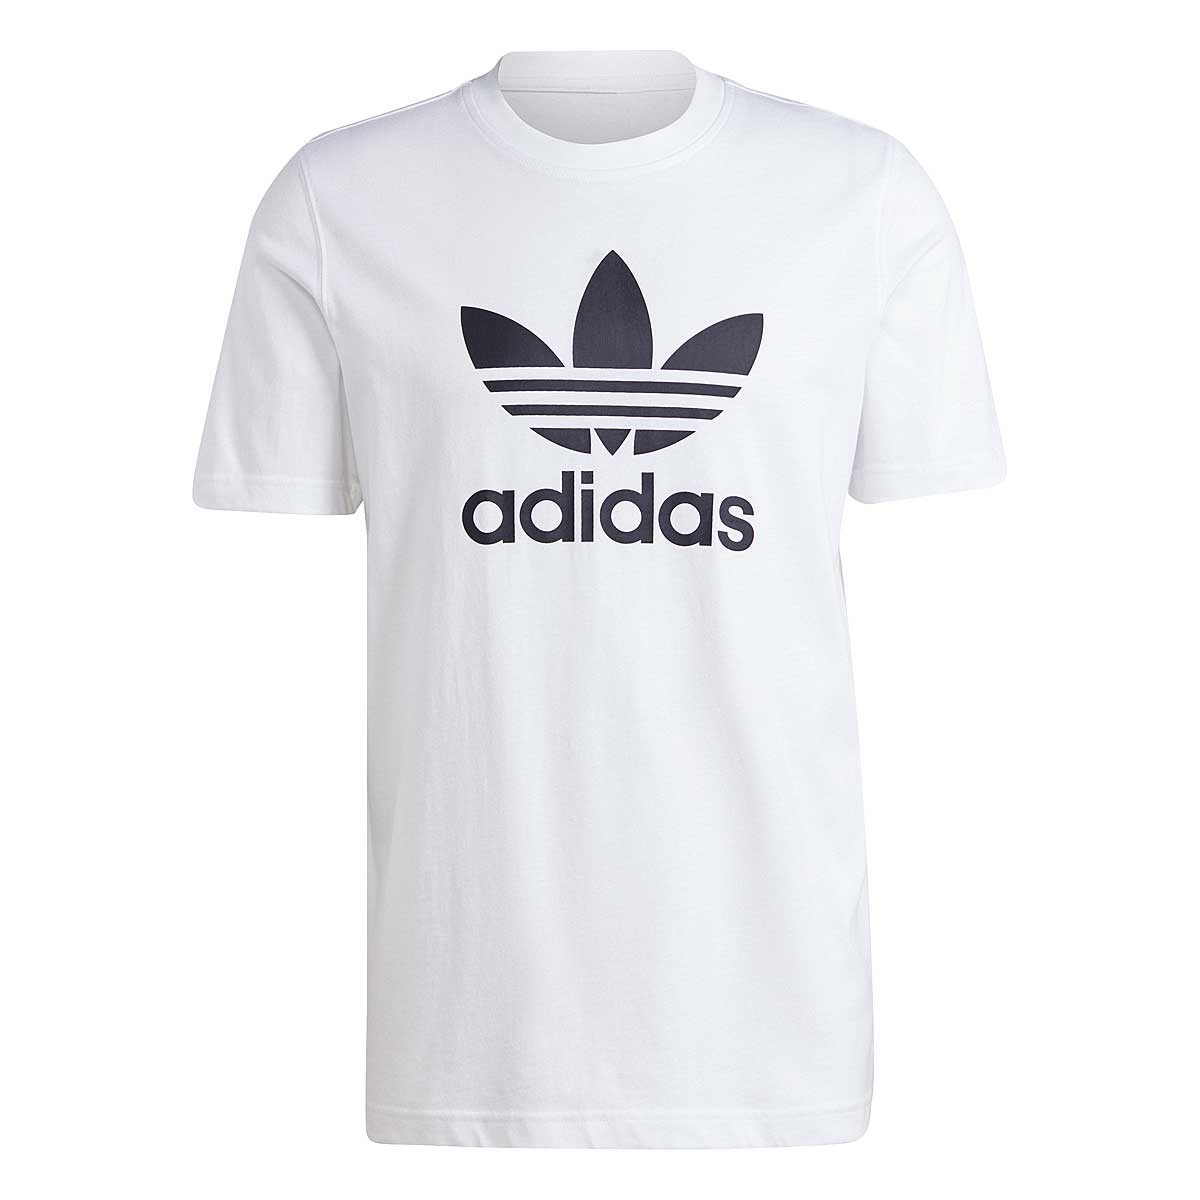 Adidas Trefoil T-shirt, Weiß/schwarz M